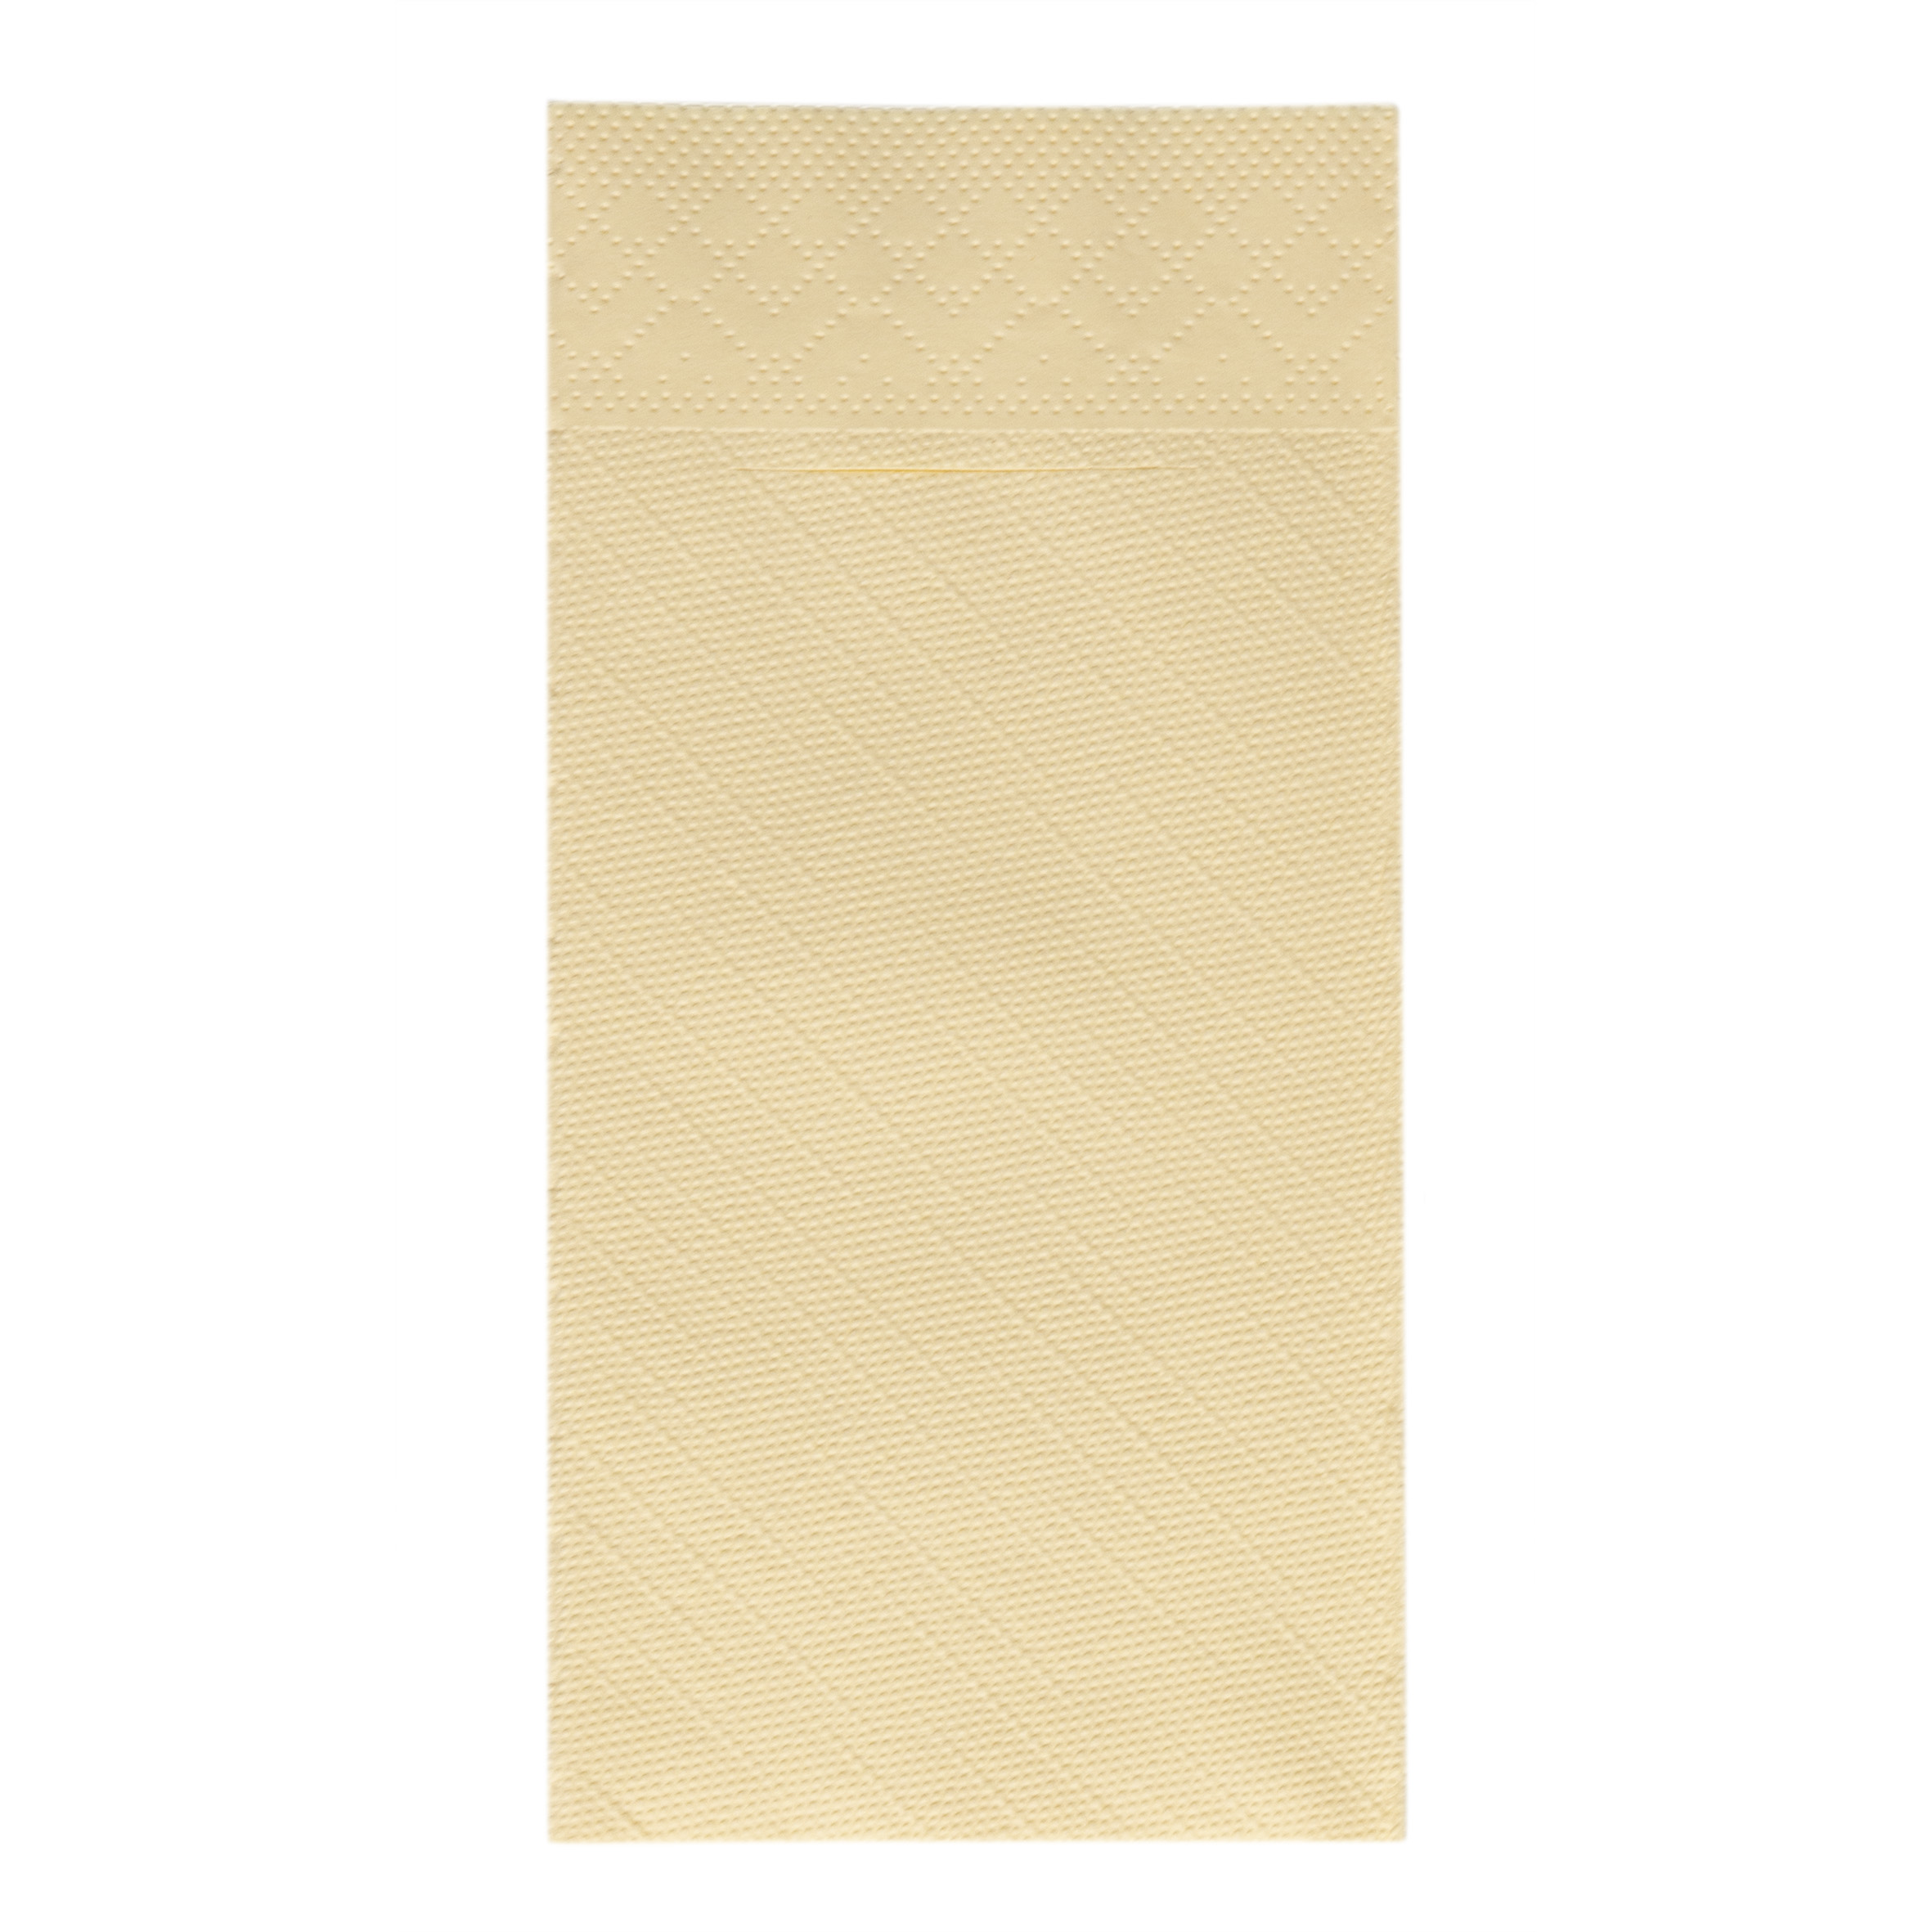 Mank Pocket-Napkins 4-lagig, Tissue-Deluxe 1/8 Falz, 40 x 40 cm, Basic creme